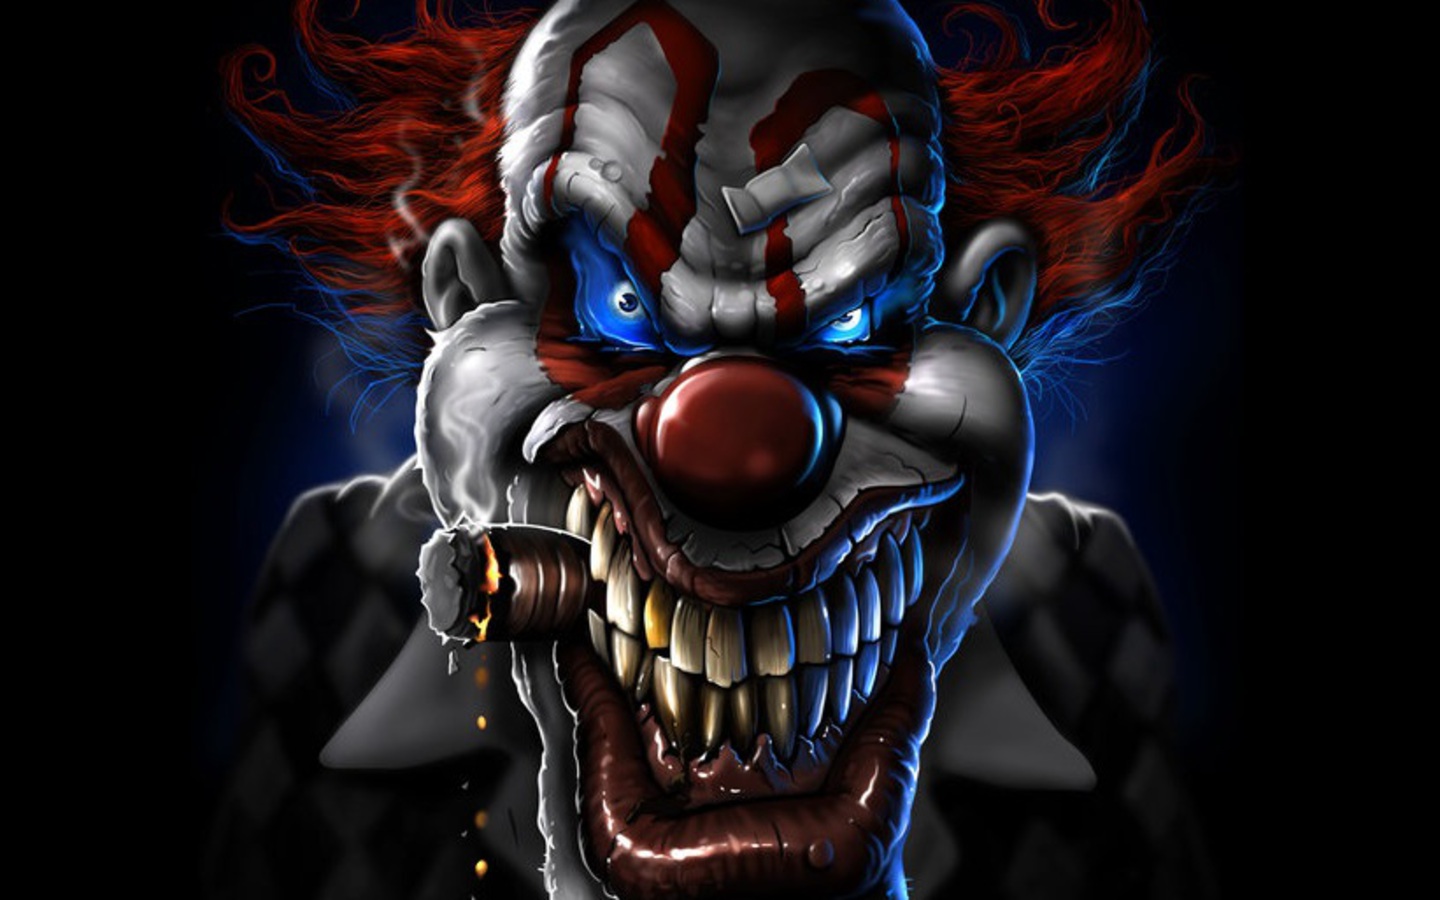 evil killer clowns wallpaper